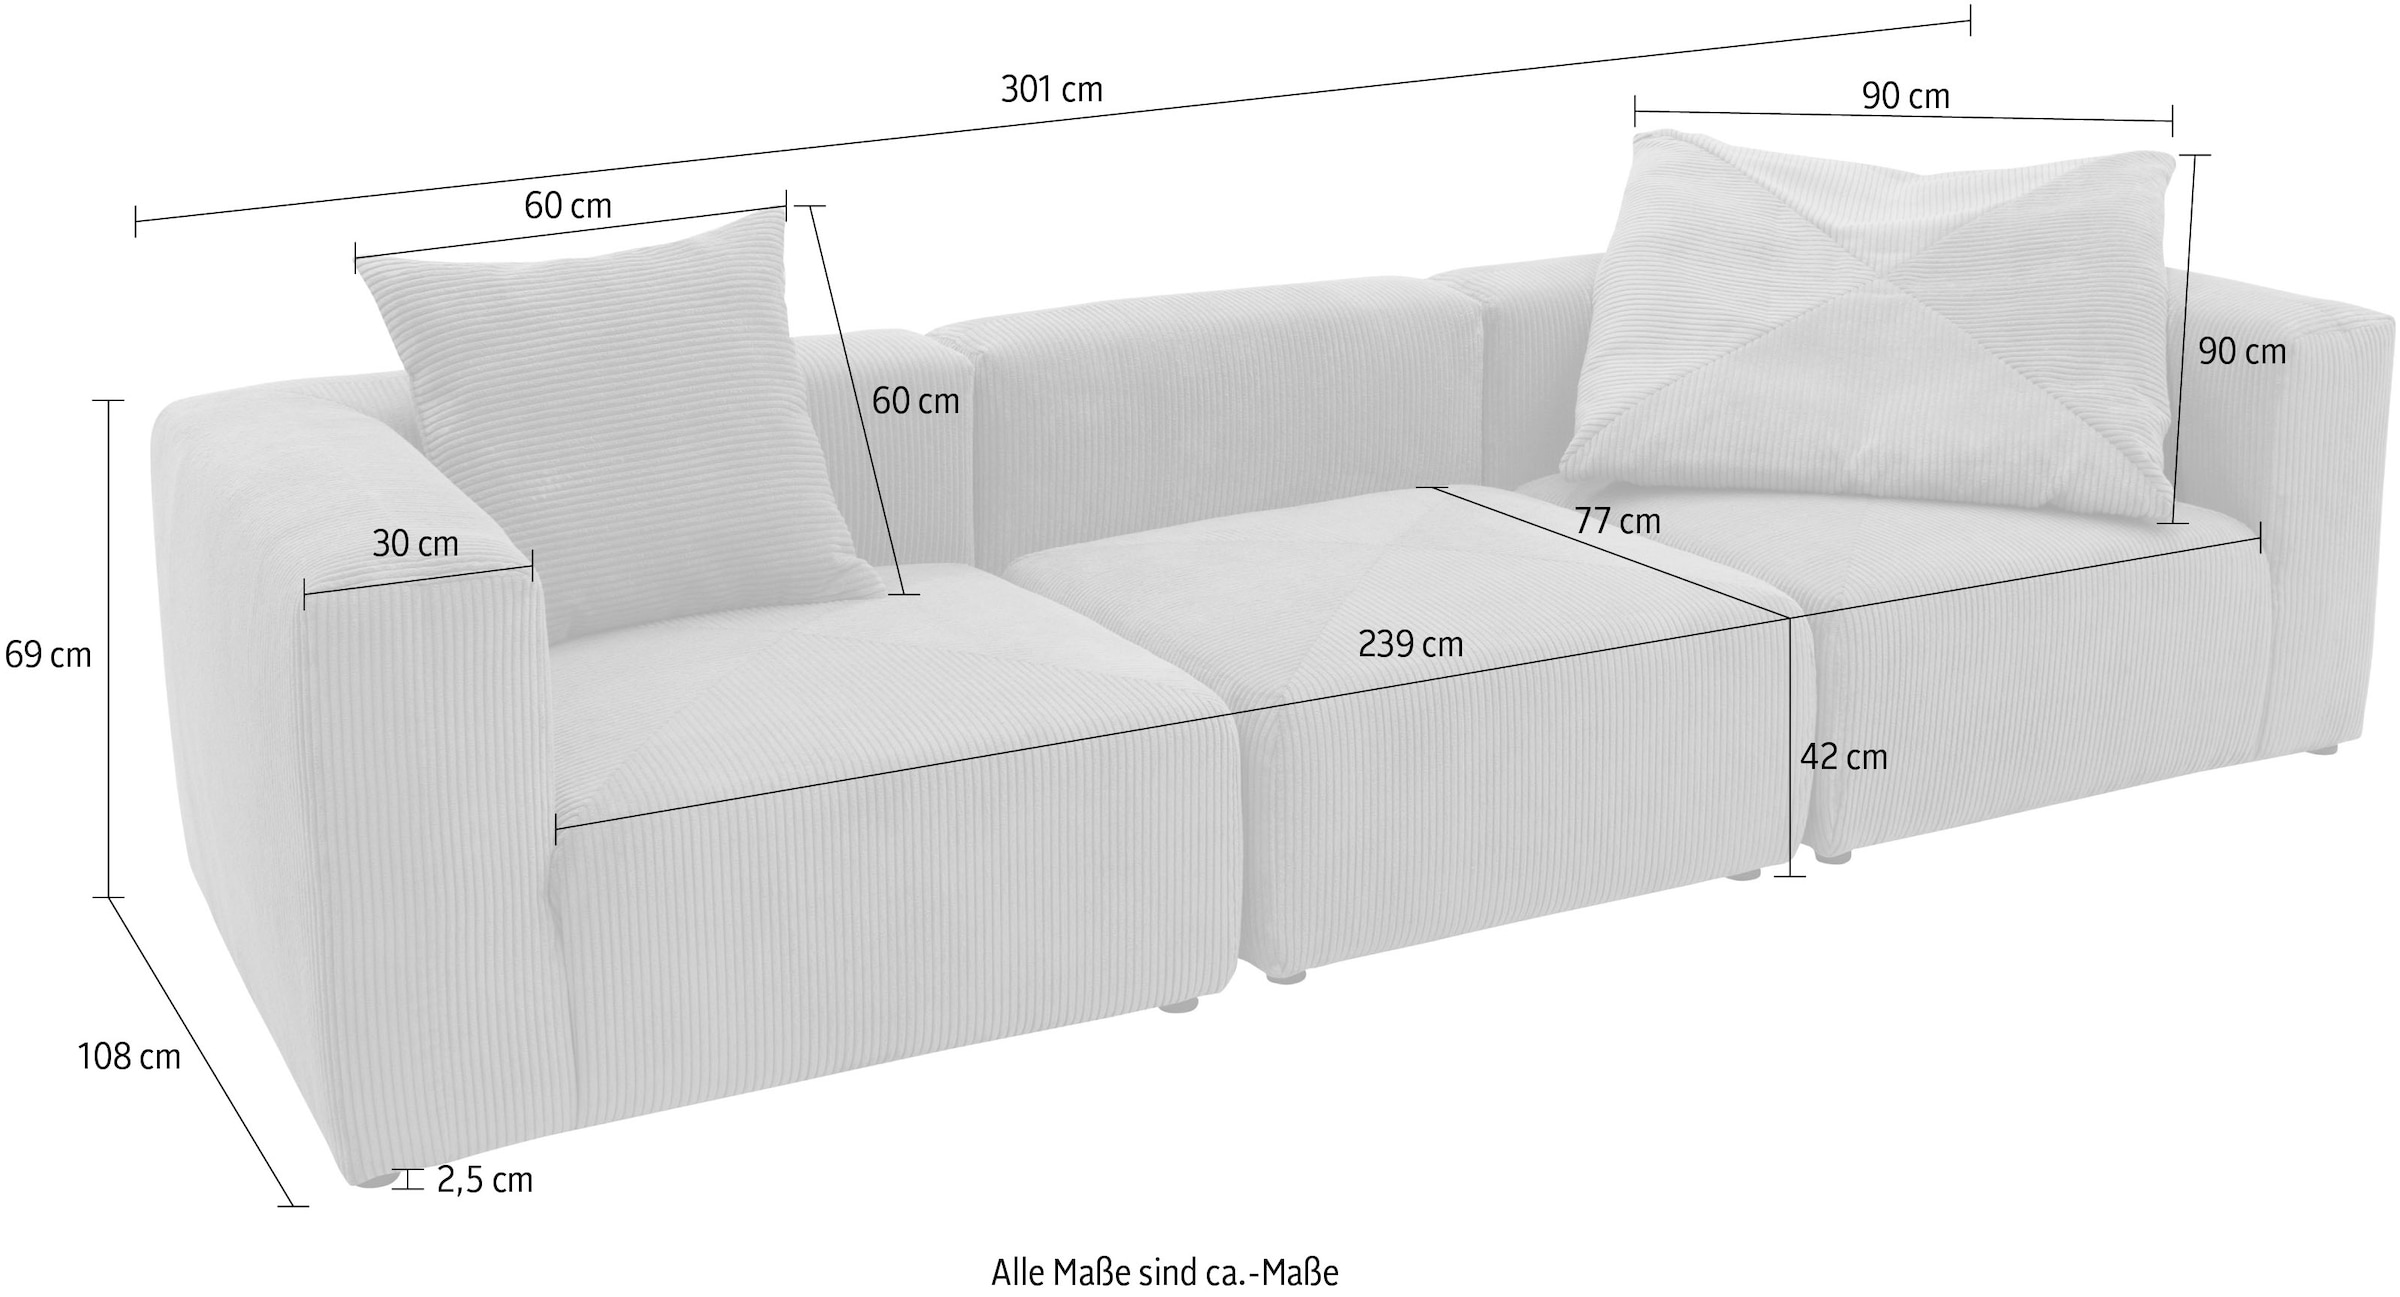 RAUM.ID Big-Sofa »Gerrid«, Cord-Bezug, bestehend aus Modulen: 2 Eck- und ein Mittelelement